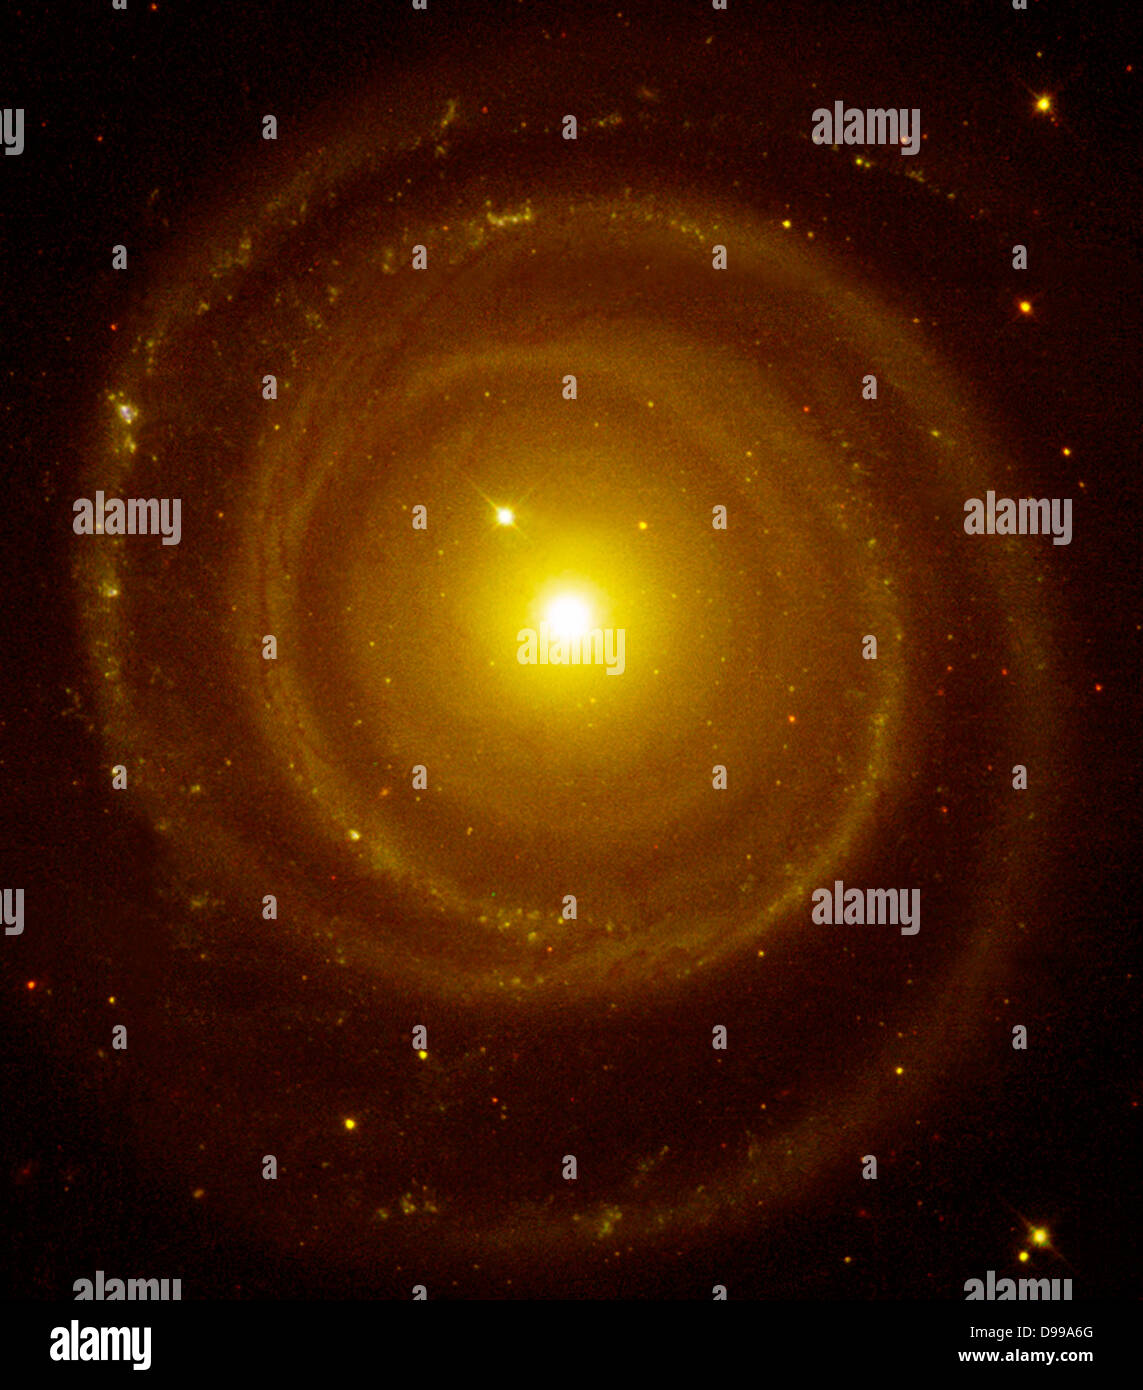 Die Galaxie NGC 4622 ist eine Spiralgalaxie, die in die entgegengesetzte Richtung aus, was erwartet wurde, drehen. Hubble Space Telescope (HST). Stockfoto